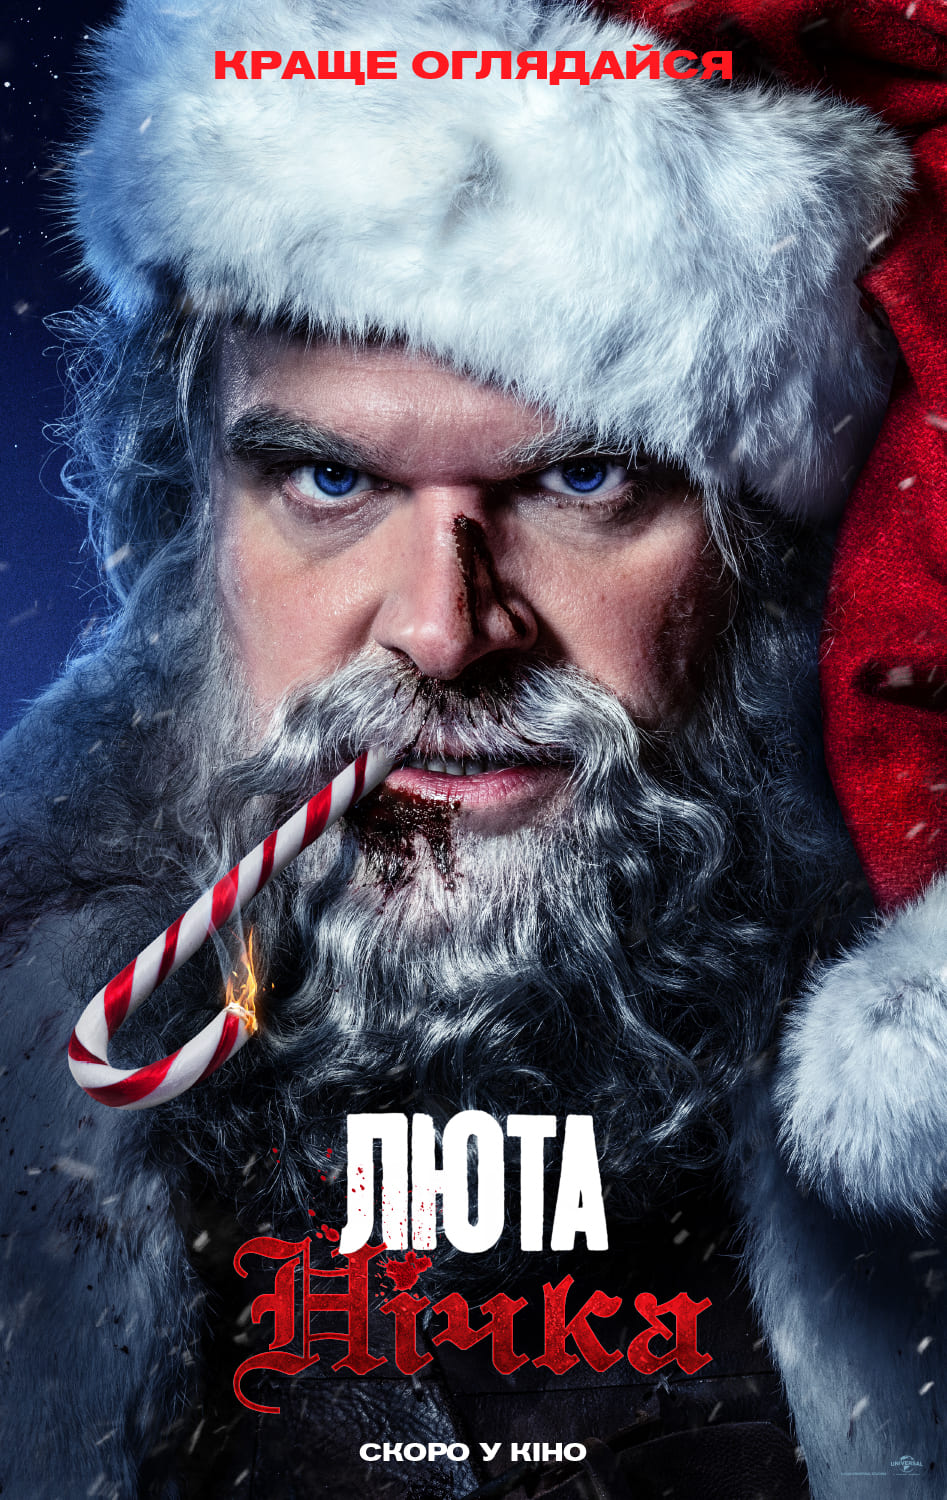 Девід Гарбор в бойовику про Санта Клауса: український трейлер фільму «Люта нічка»